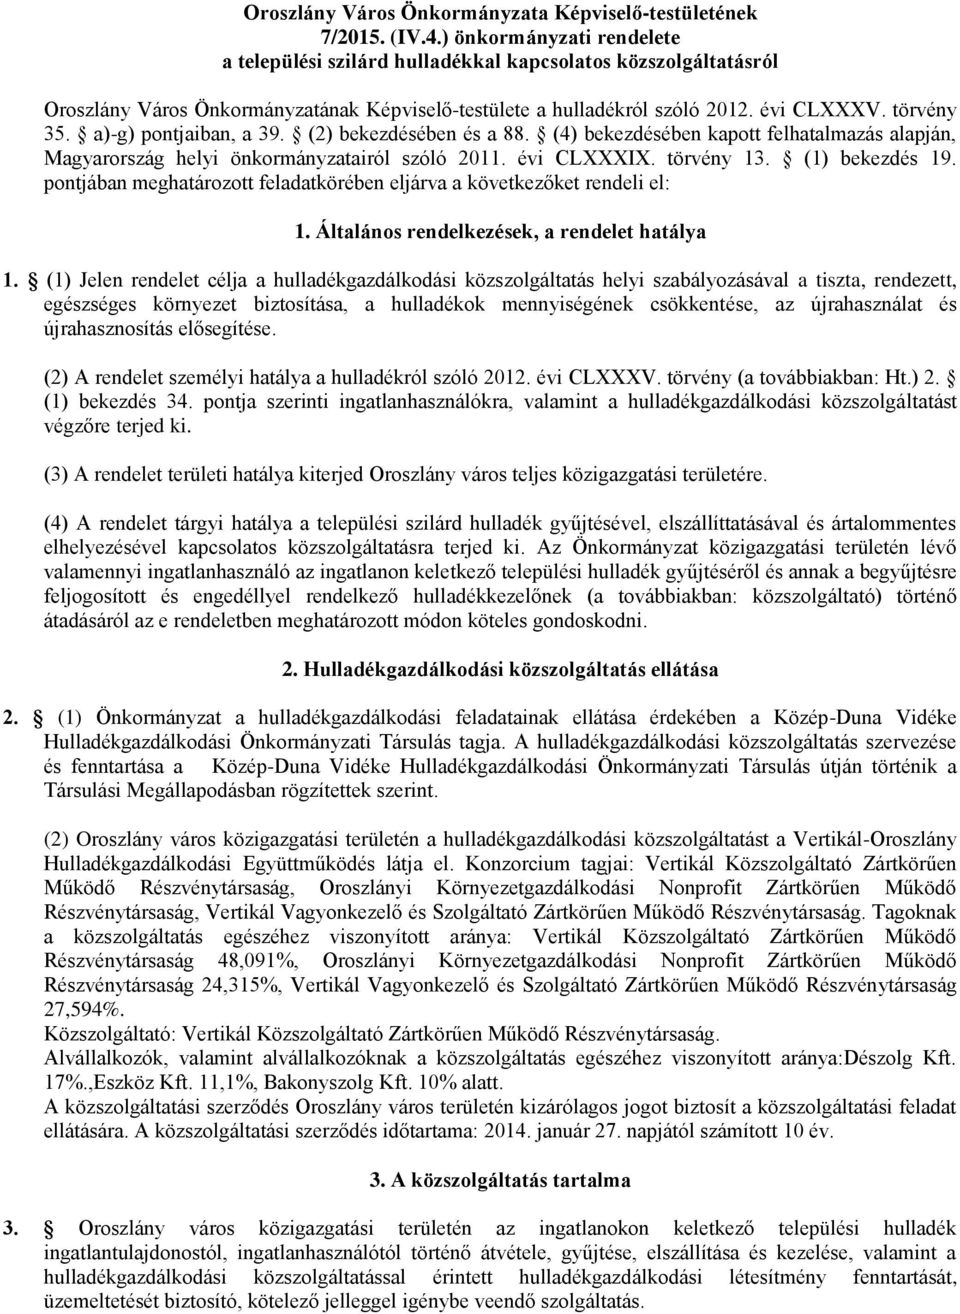 a)-g) pontjaiban, a 39. (2) bekezdésében és a 88. (4) bekezdésében kapott felhatalmazás alapján, Magyarország helyi önkormányzatairól szóló 2011. évi CLXXXIX. törvény 13. (1) bekezdés 19.